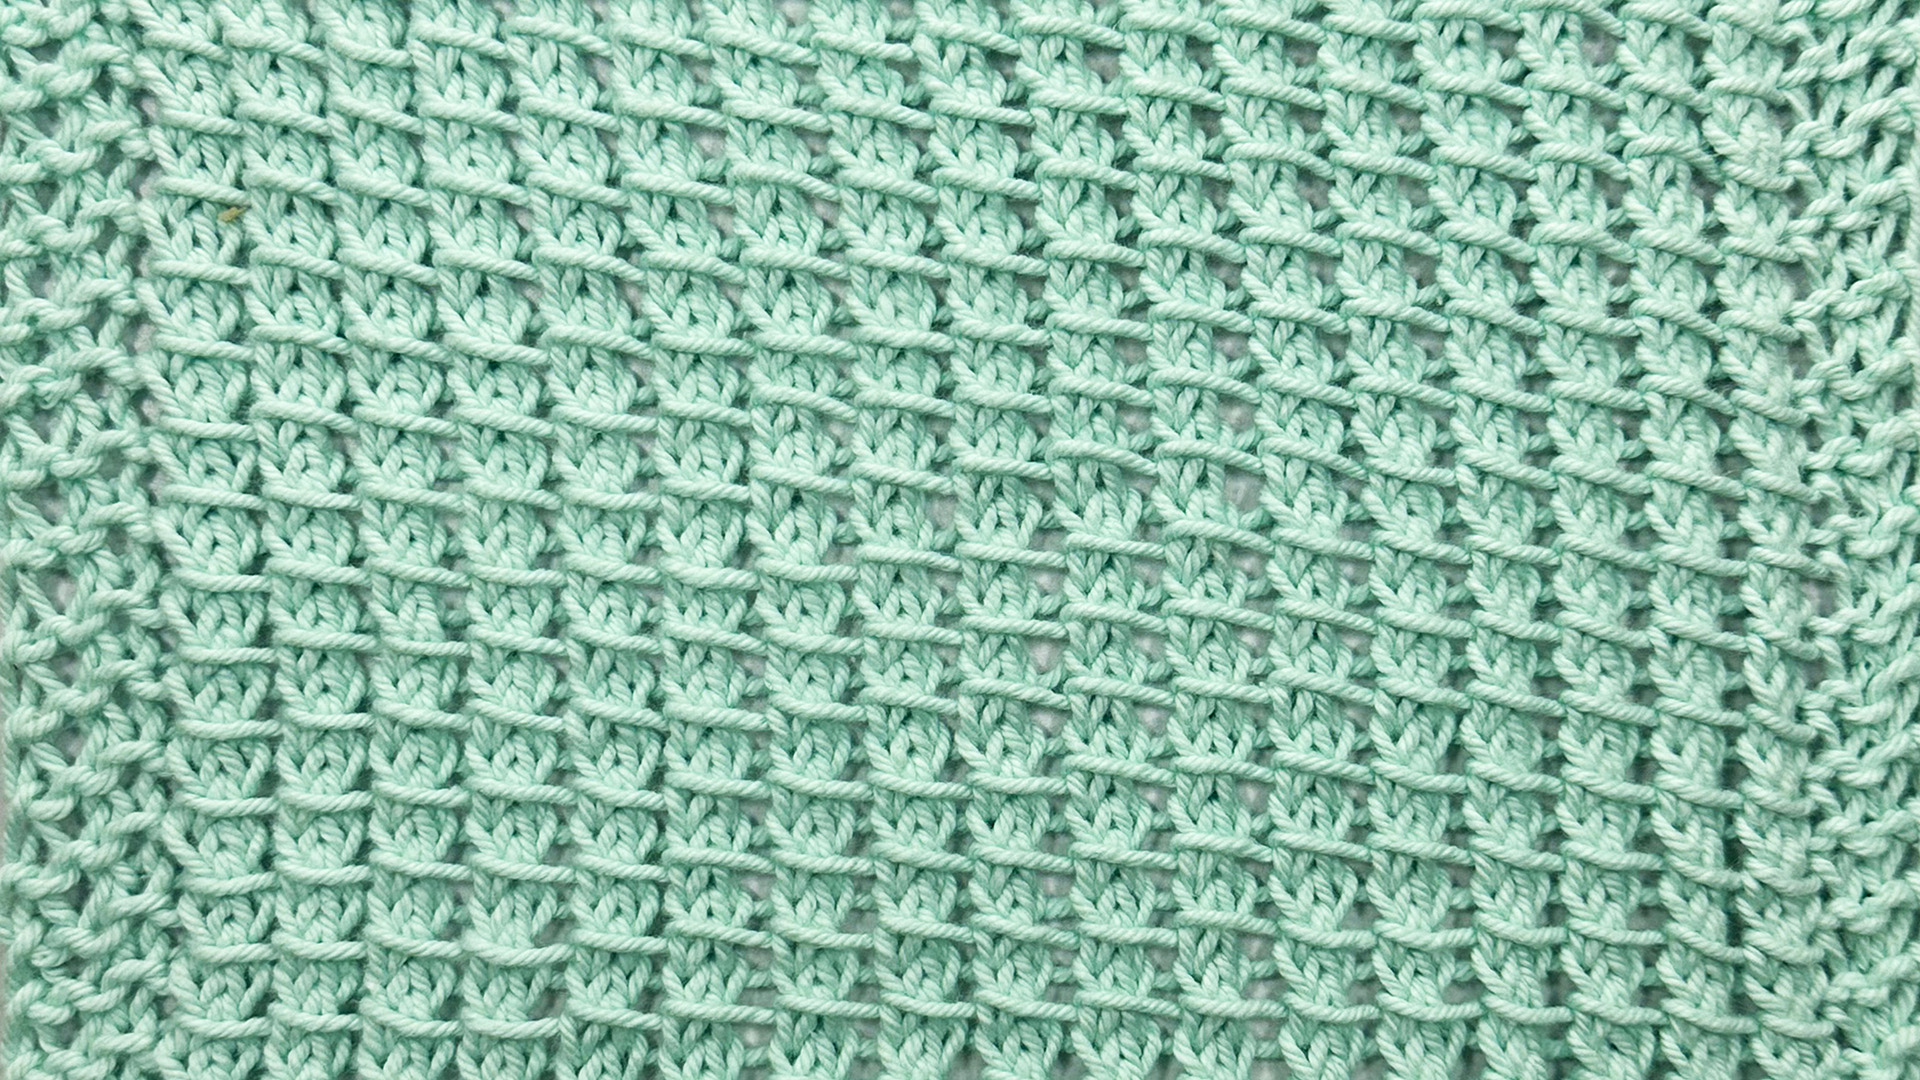 Free Knitting Pattern - Bamboo Stitch Dishcloth